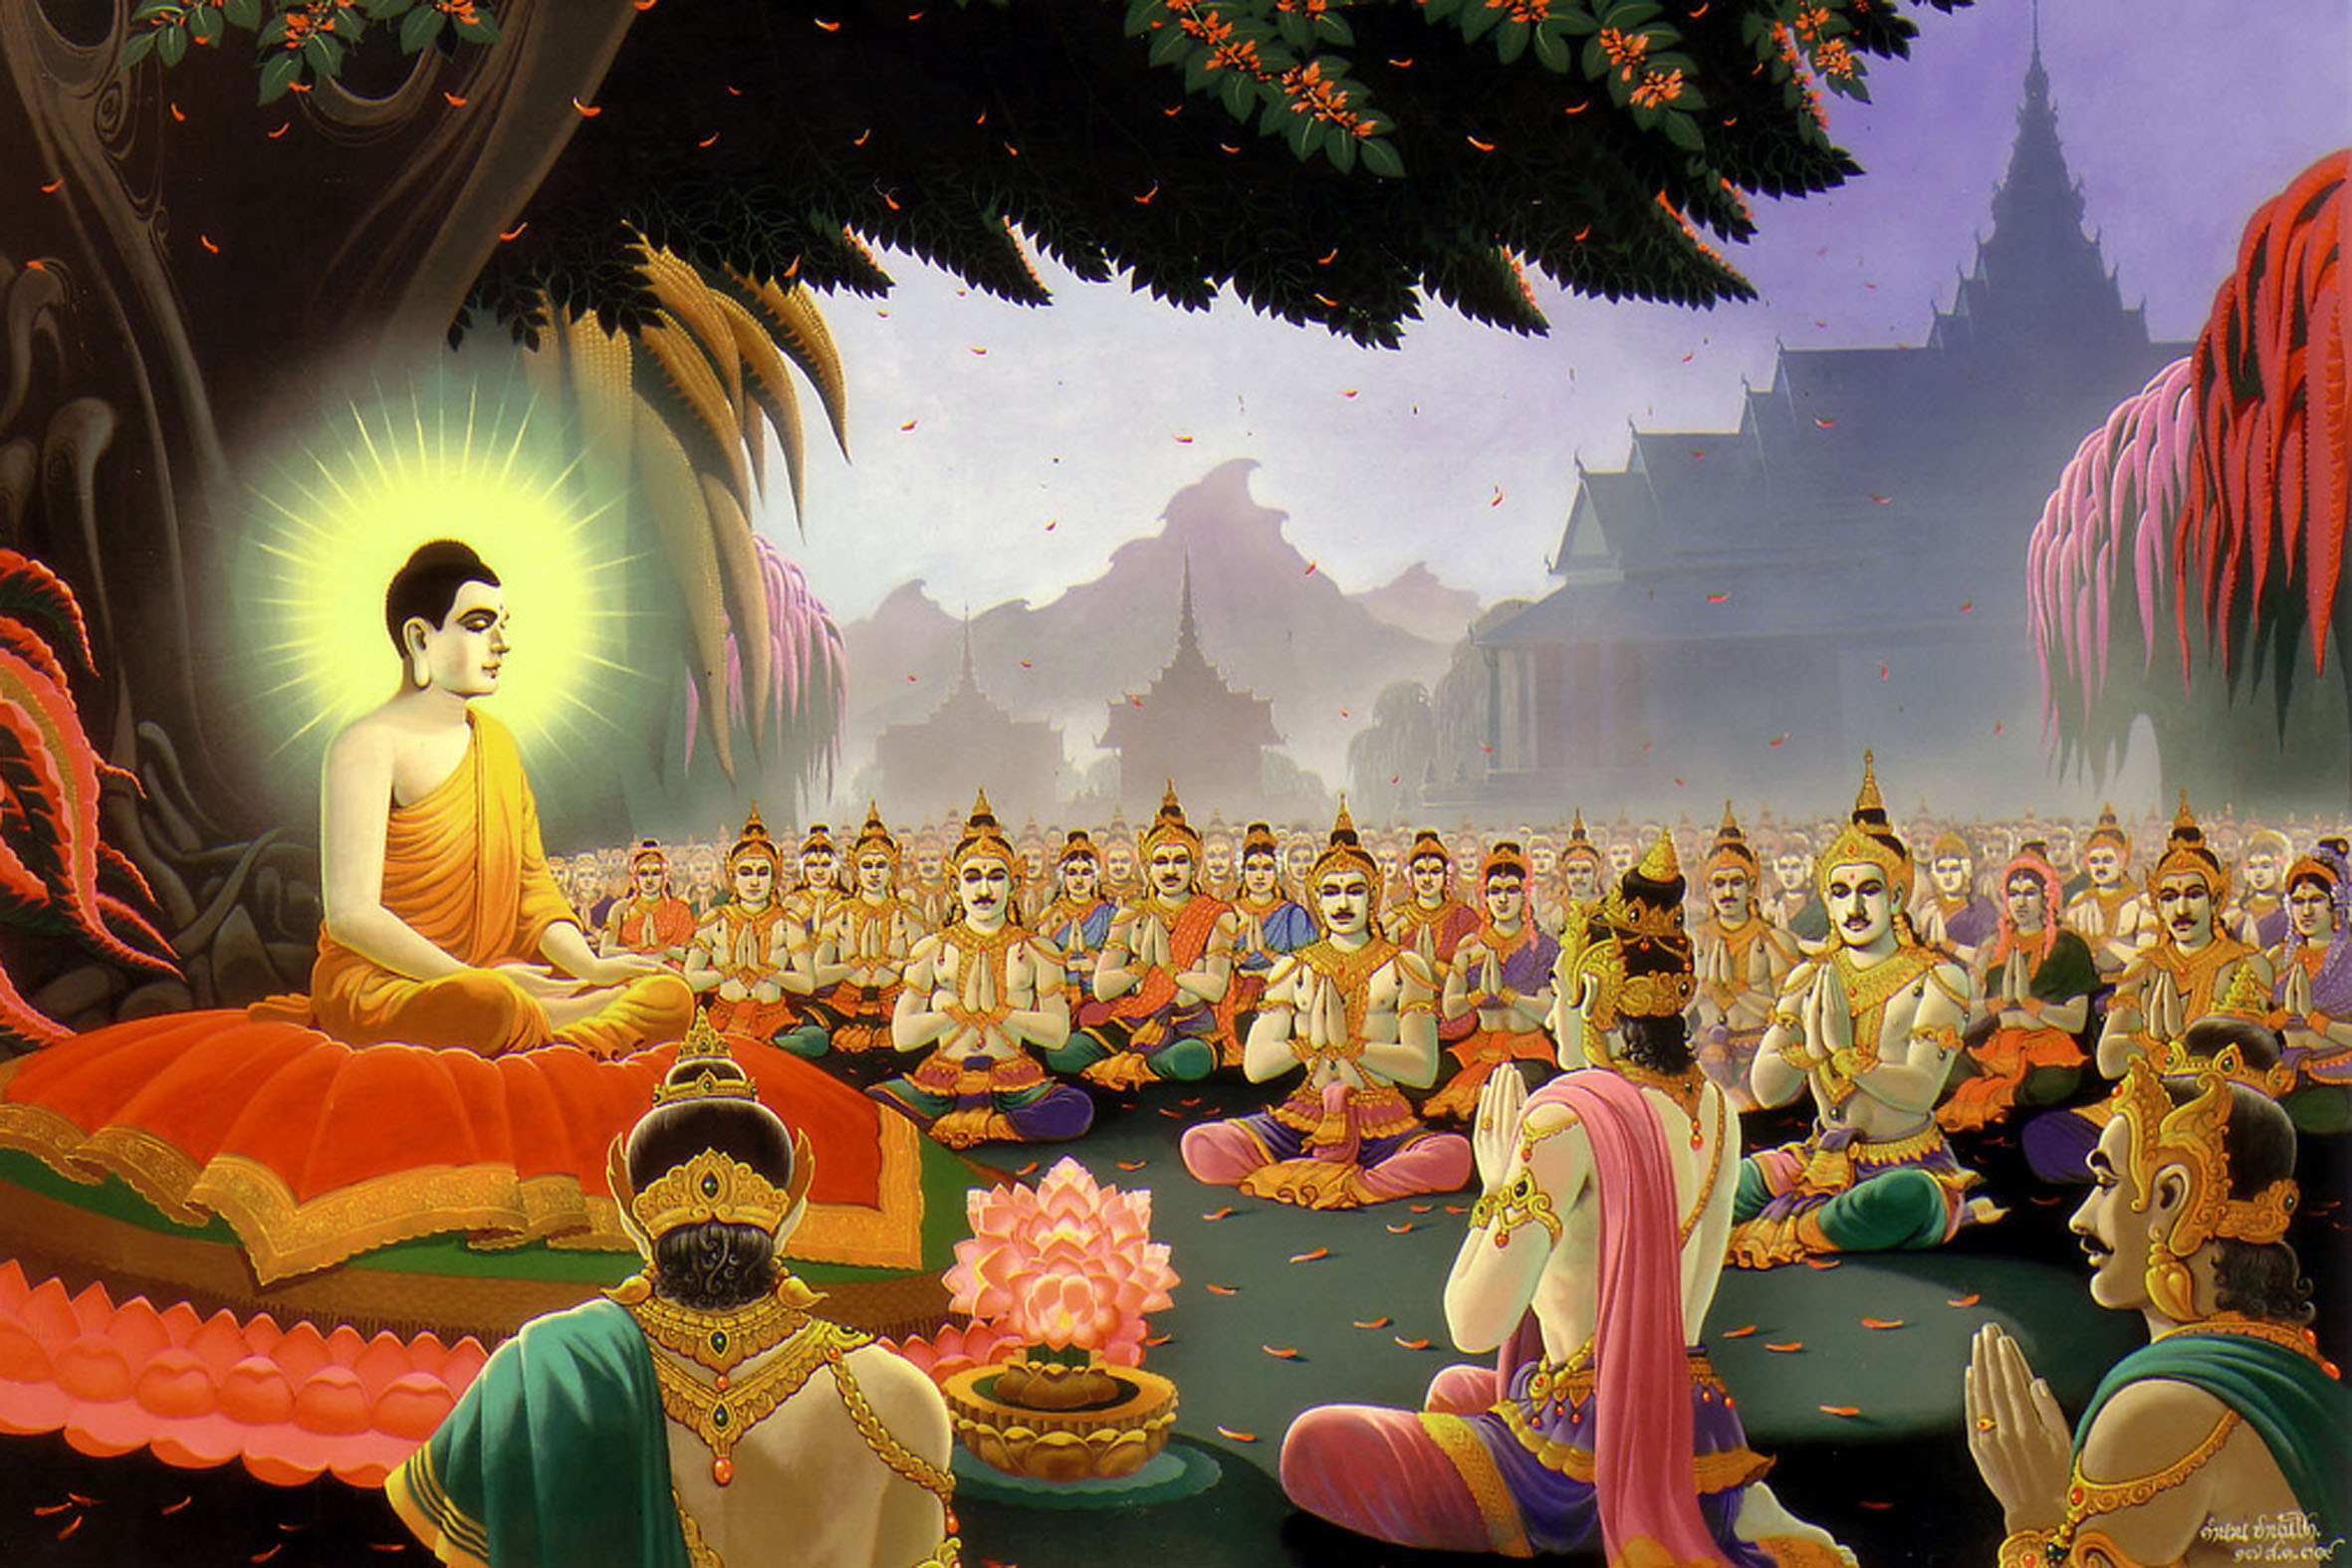 Проповедь будды. Сиддхартха Гаутама Будда. Будда Сиддхартха Гаутама Шакьямуни. Жизнь Сиддхартха Гаутама. Будда Гаутама Бодхисаттва.